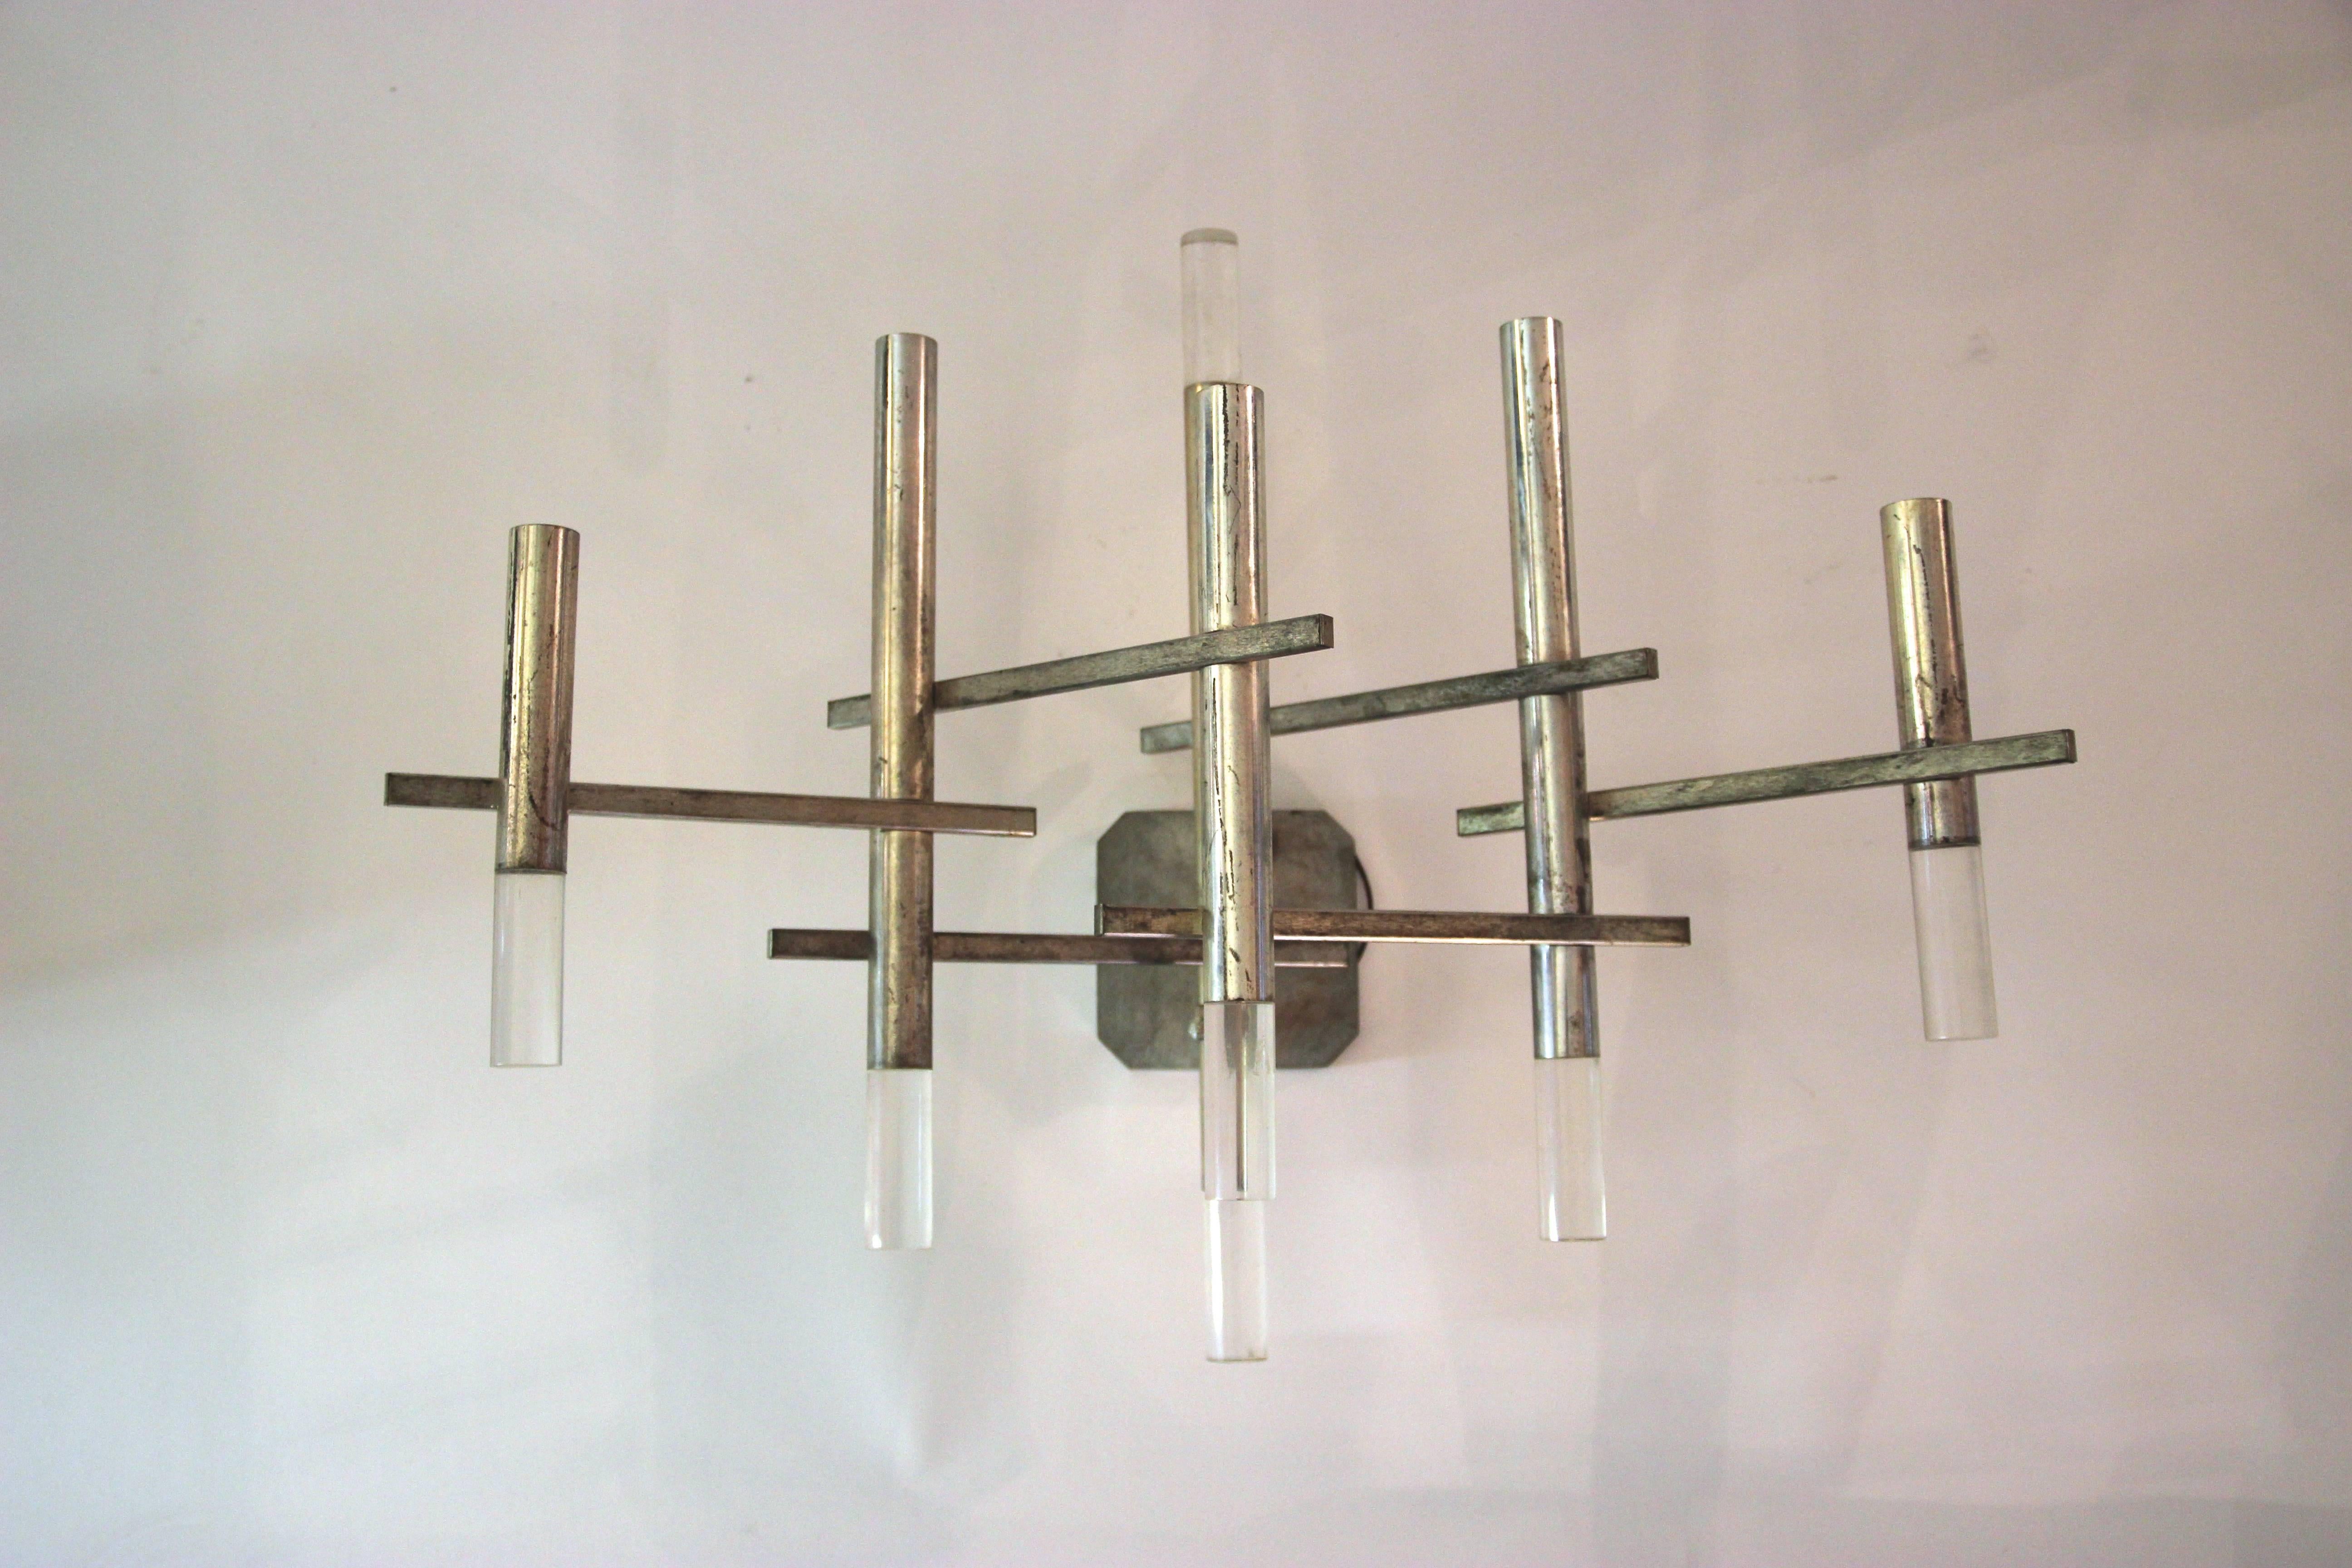 Gaetano Sciolari, pair of sconces, 
metal and plexiglass, 
circa 1970, Italy.
Measures: Height 50 cm, width 61 cm, depth 23 cm.